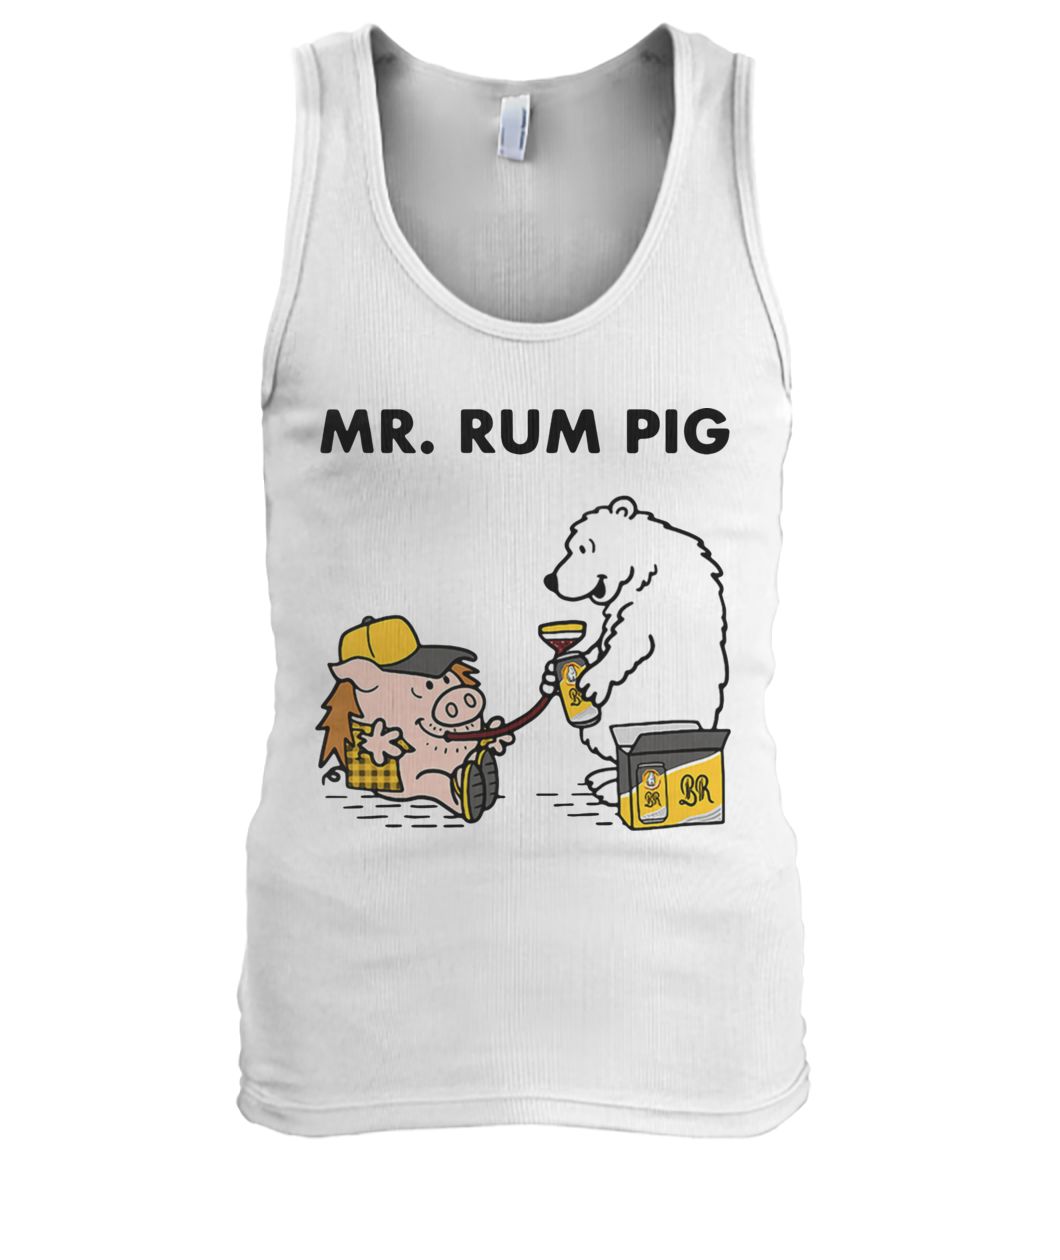 Mr rum pig men's tank top